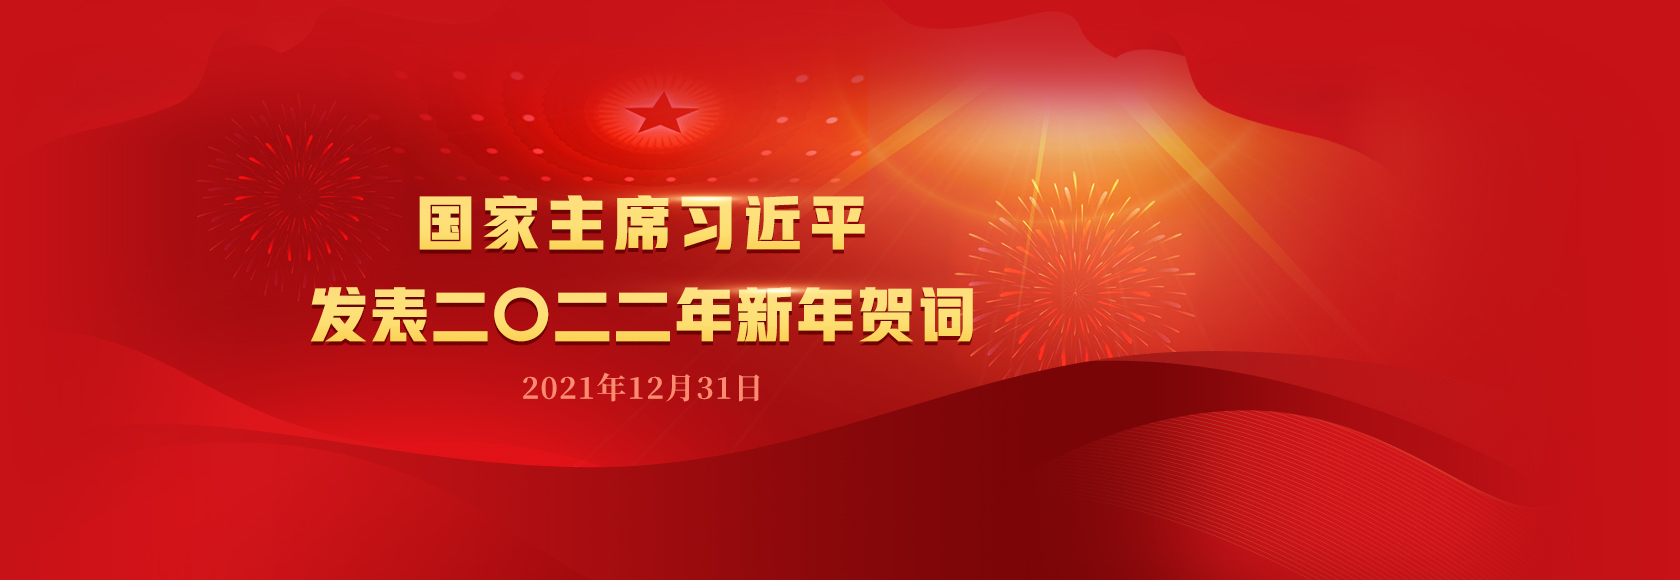 国家主席习近平发表二〇二二年新年贺词-淇云博客-专注于IT技术分享